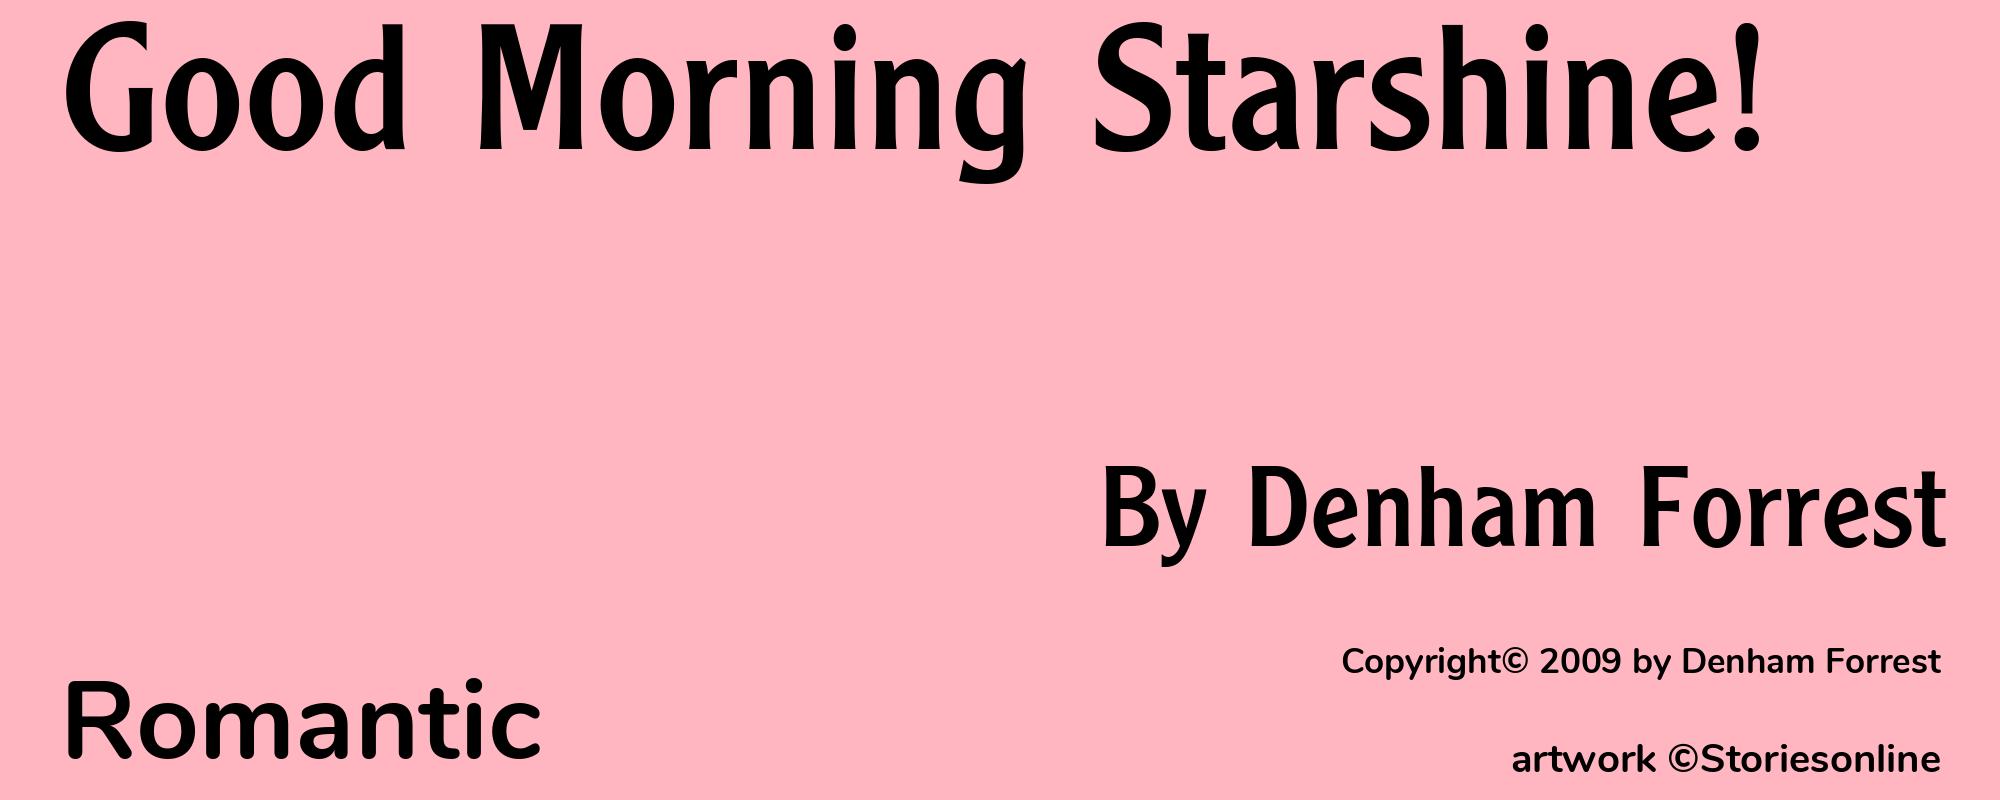 Good Morning Starshine! - Cover